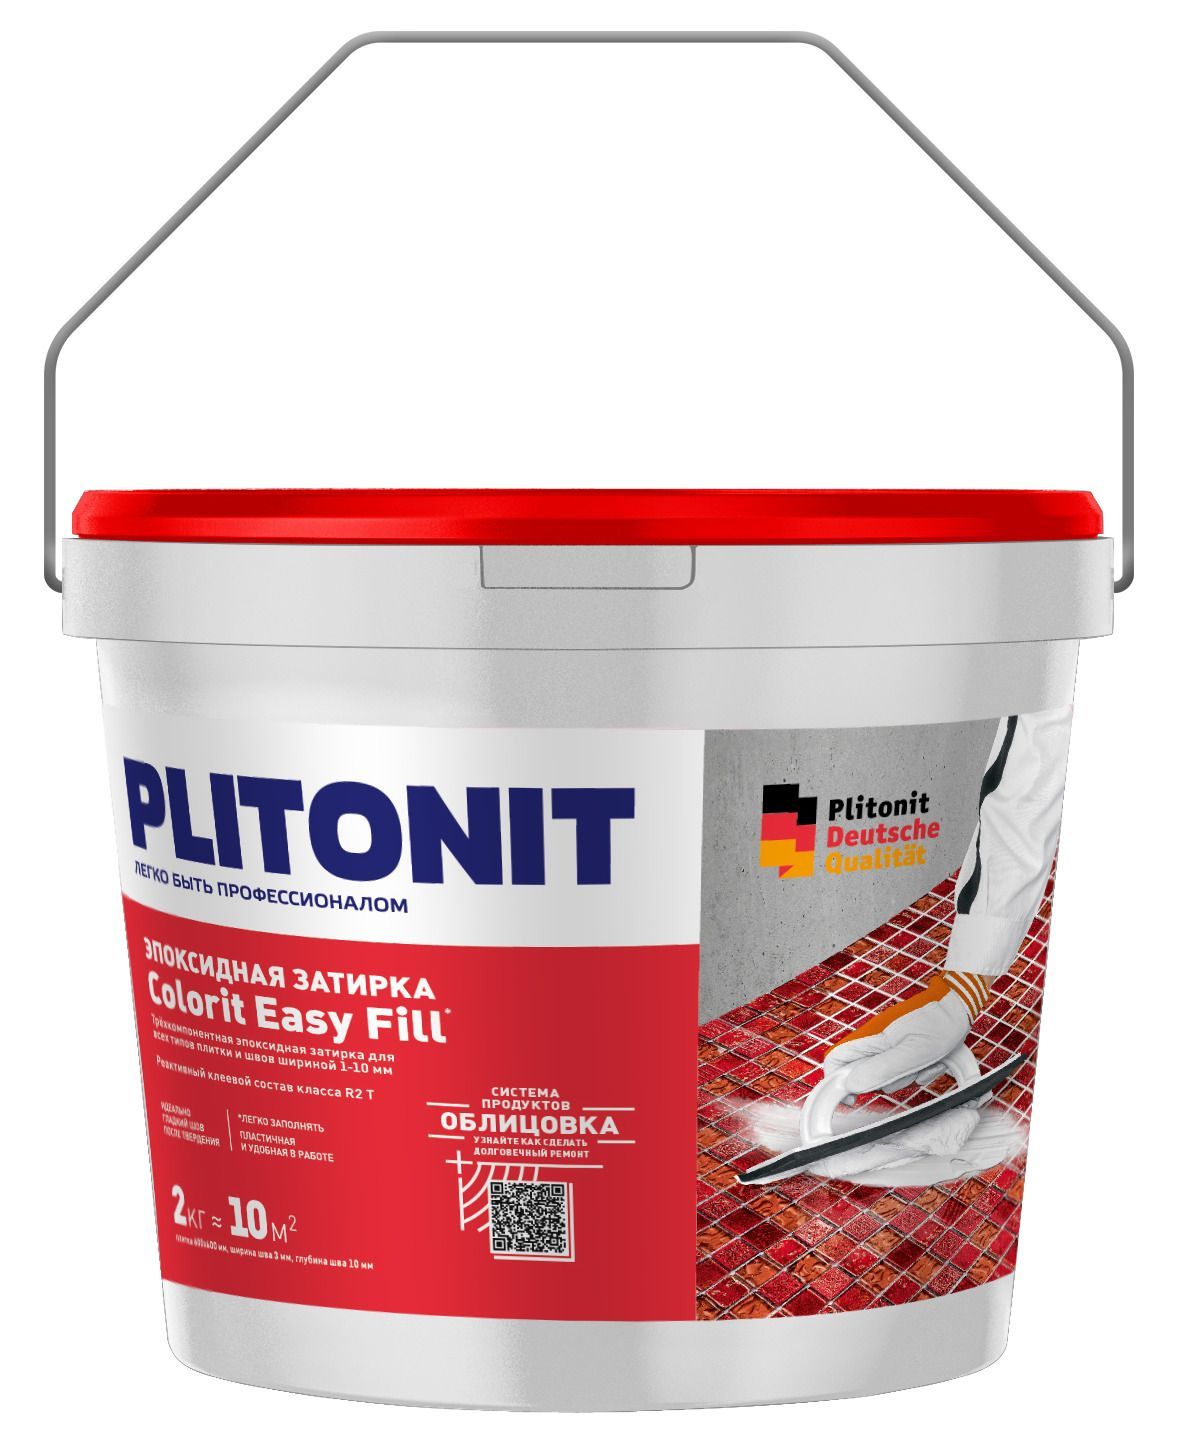 Купить Затирка эпоксидная PLITONIT Colorit EasyFill серебристо-серый 2кг (ведро) Н008643